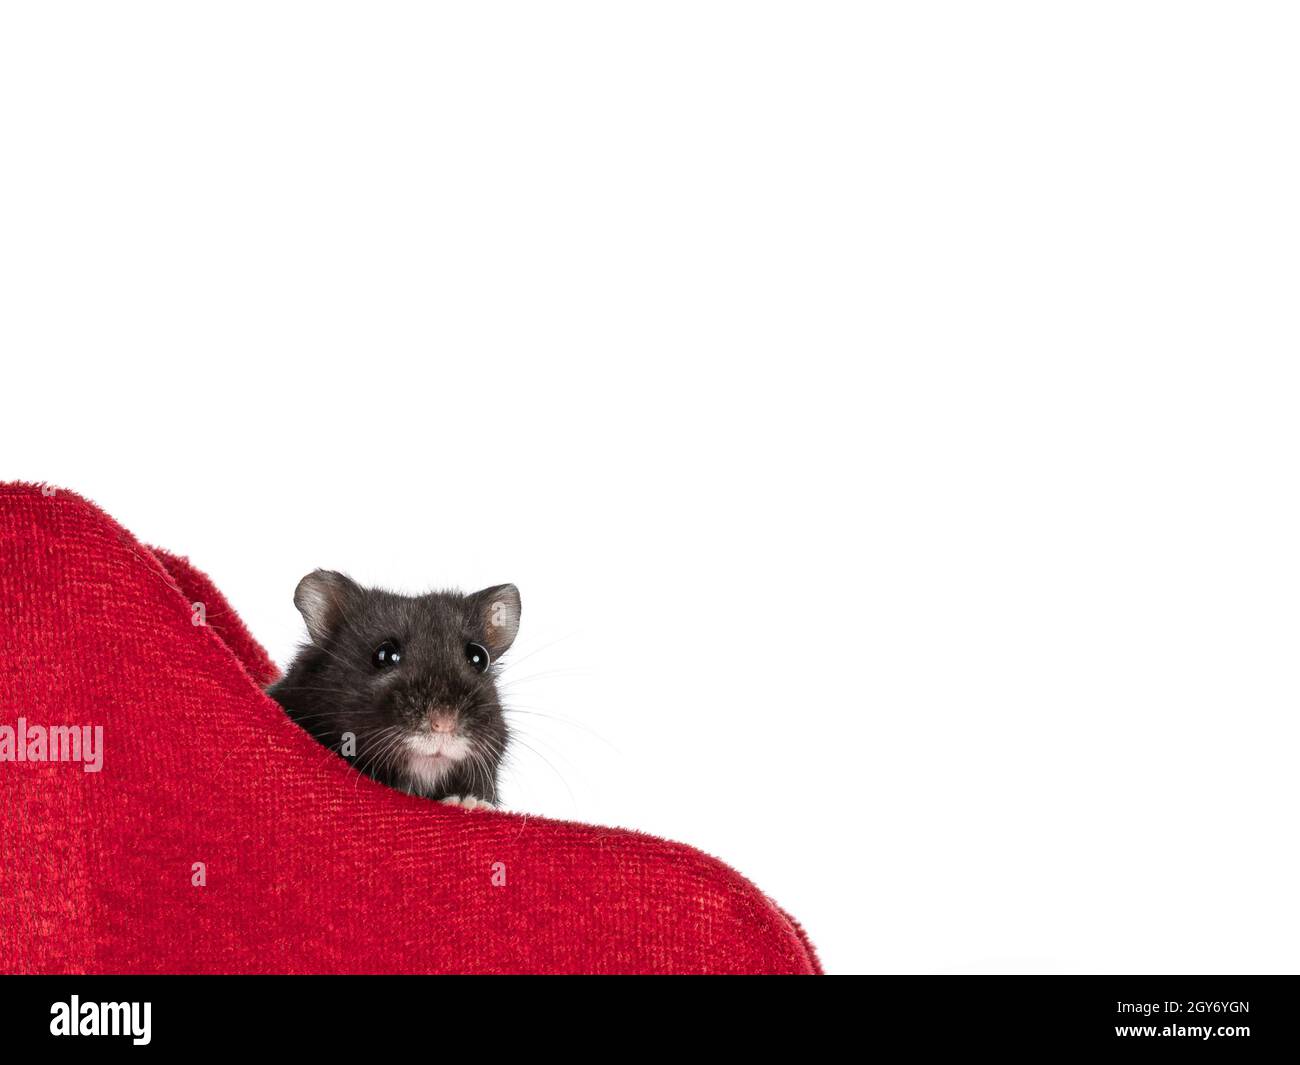 Gros plan sur un joli petit hamster noir qui regarde sur le bord de velours rouge du traîneau.Isolé sur un fond blanc. Banque D'Images